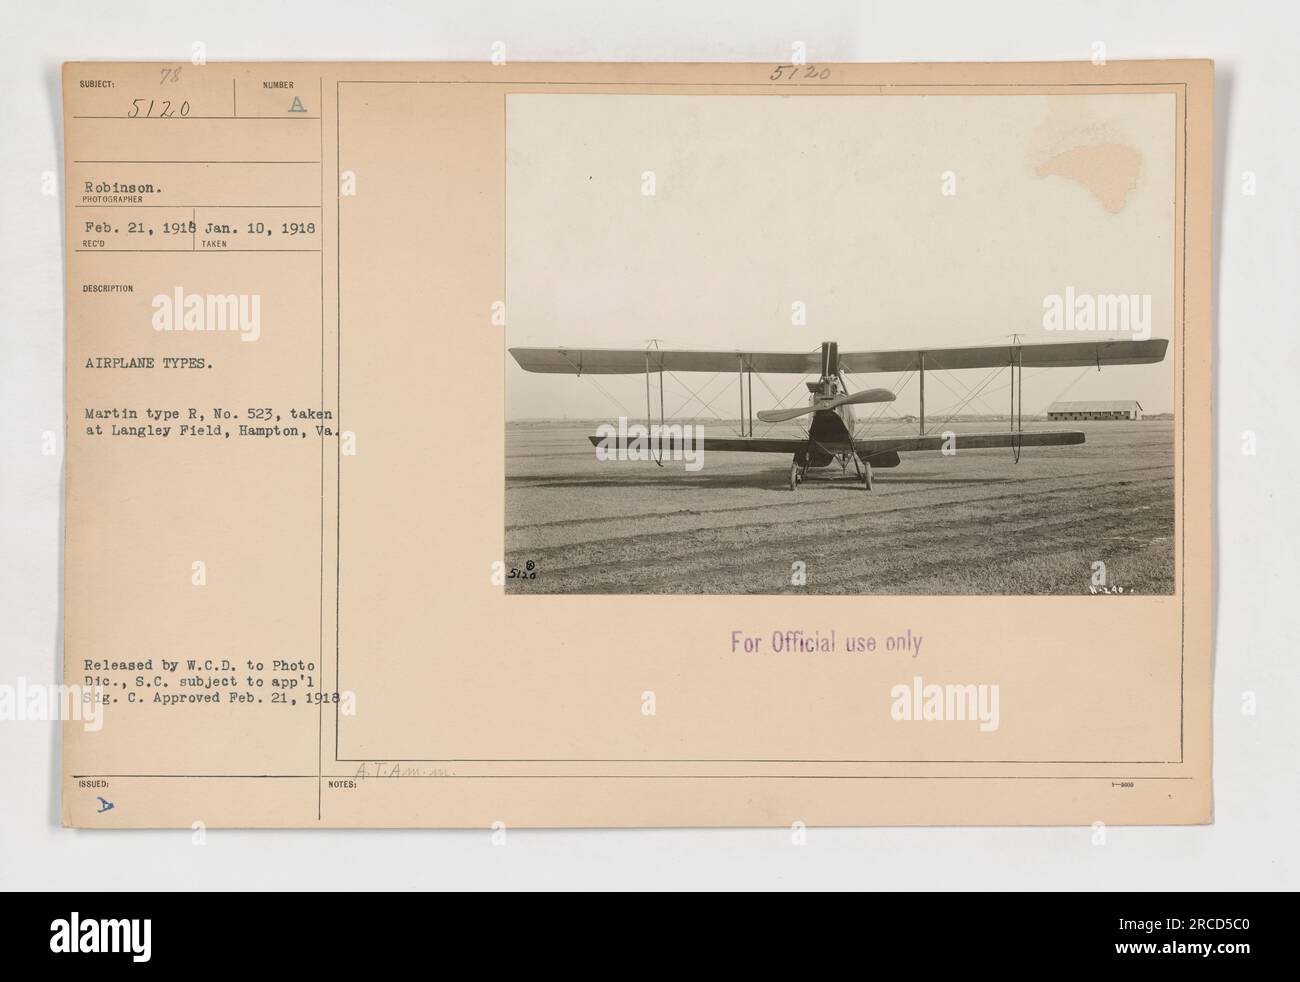 Bild eines Martin-R-Flugzeugs, Nr. 523, aufgenommen in Langley Field, Hampton, Virginia. Dieses Foto wurde am 10. Januar 1918 aufgenommen und von W.C.D. an Photo DIC., S.C. veröffentlicht, vorbehaltlich App'l Sig. C. genehmigt am 21. Februar 1918. Dieses Bild ist nur für den offiziellen Gebrauch bestimmt. Stockfoto